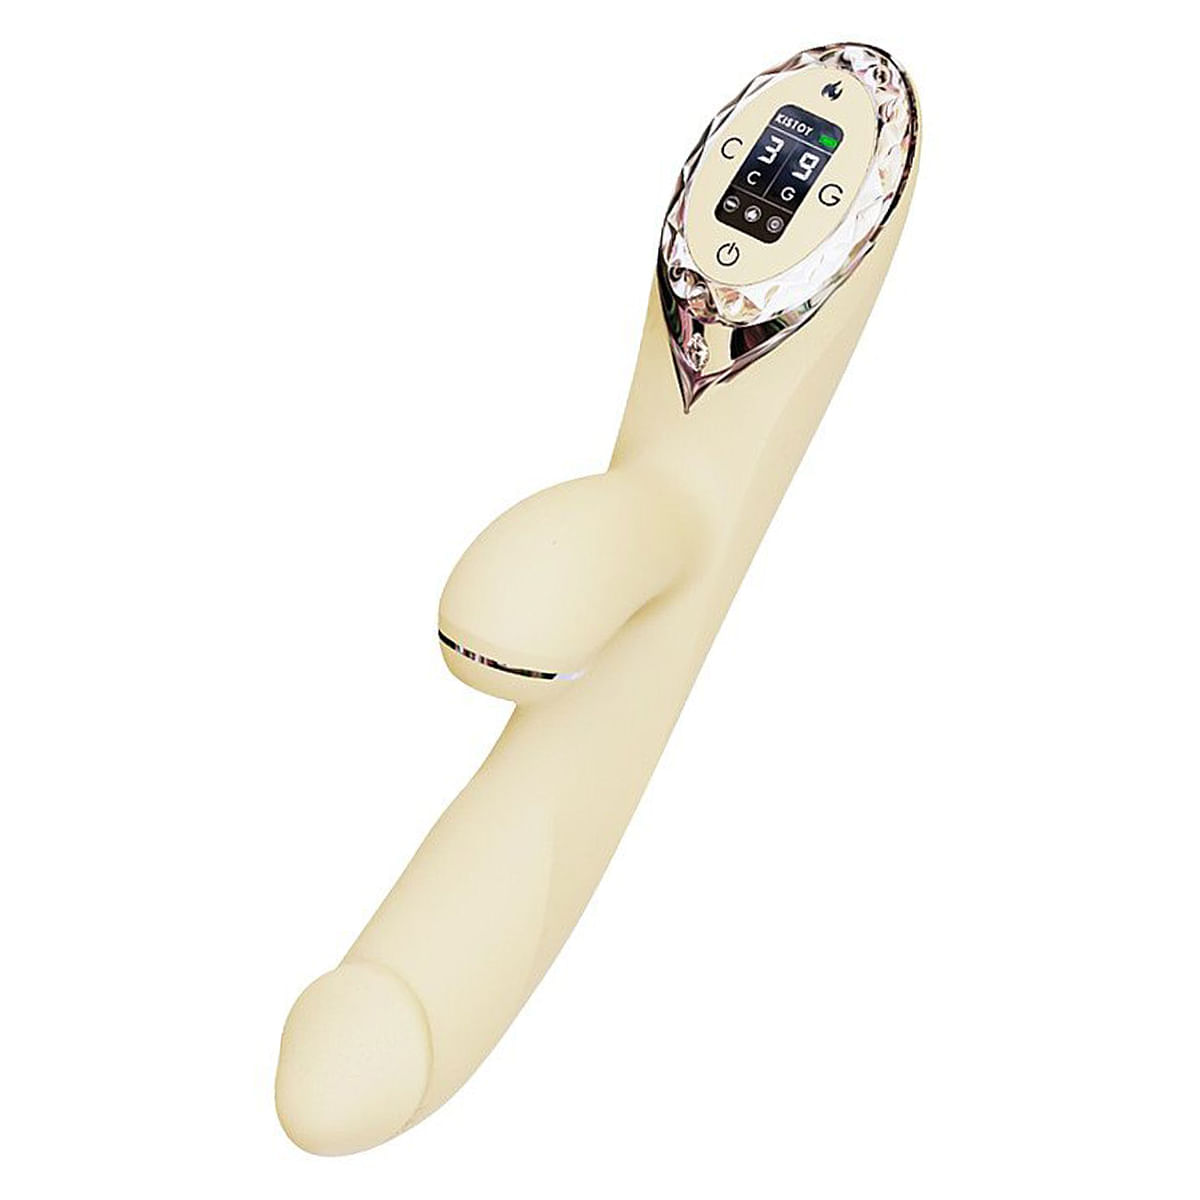 Kisstoy A-King Pro Vibrador com Estimulador de Clitoris 9 Modos de Vibração e Pulsação Sexy Import